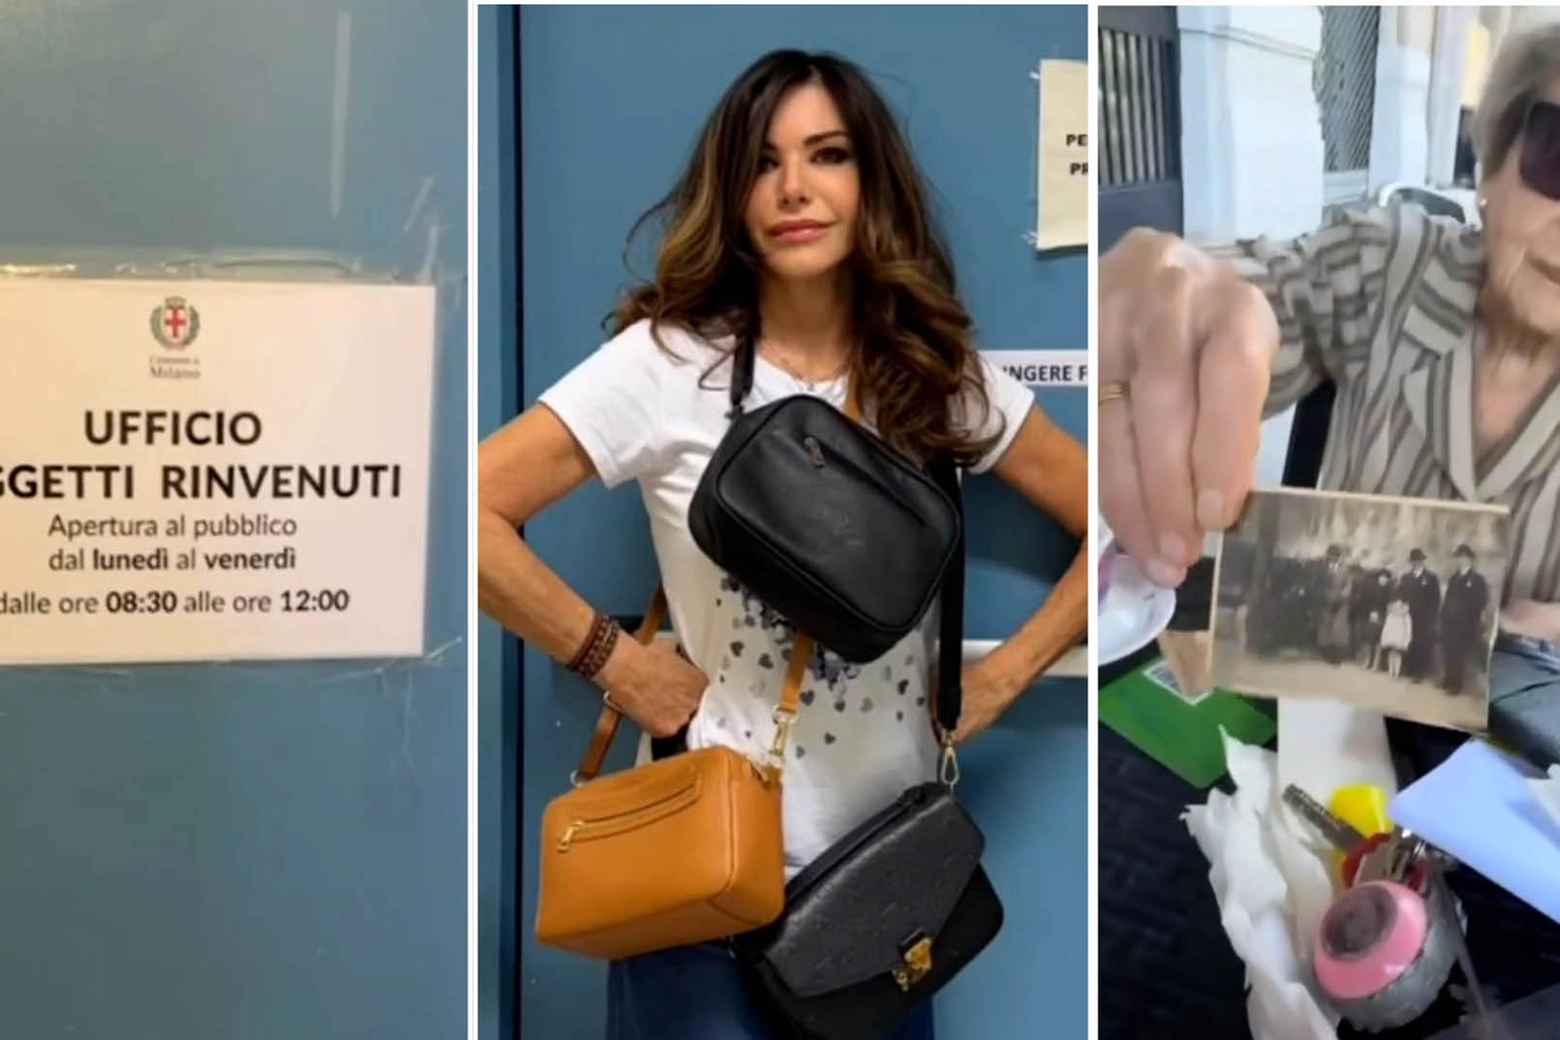 Emanuela Folliero e sua madre all'ufficio oggetti rinvenuti: la presentatrice ha ritrovato la borsa scippata alla madre qualche settimana fa sul metrò